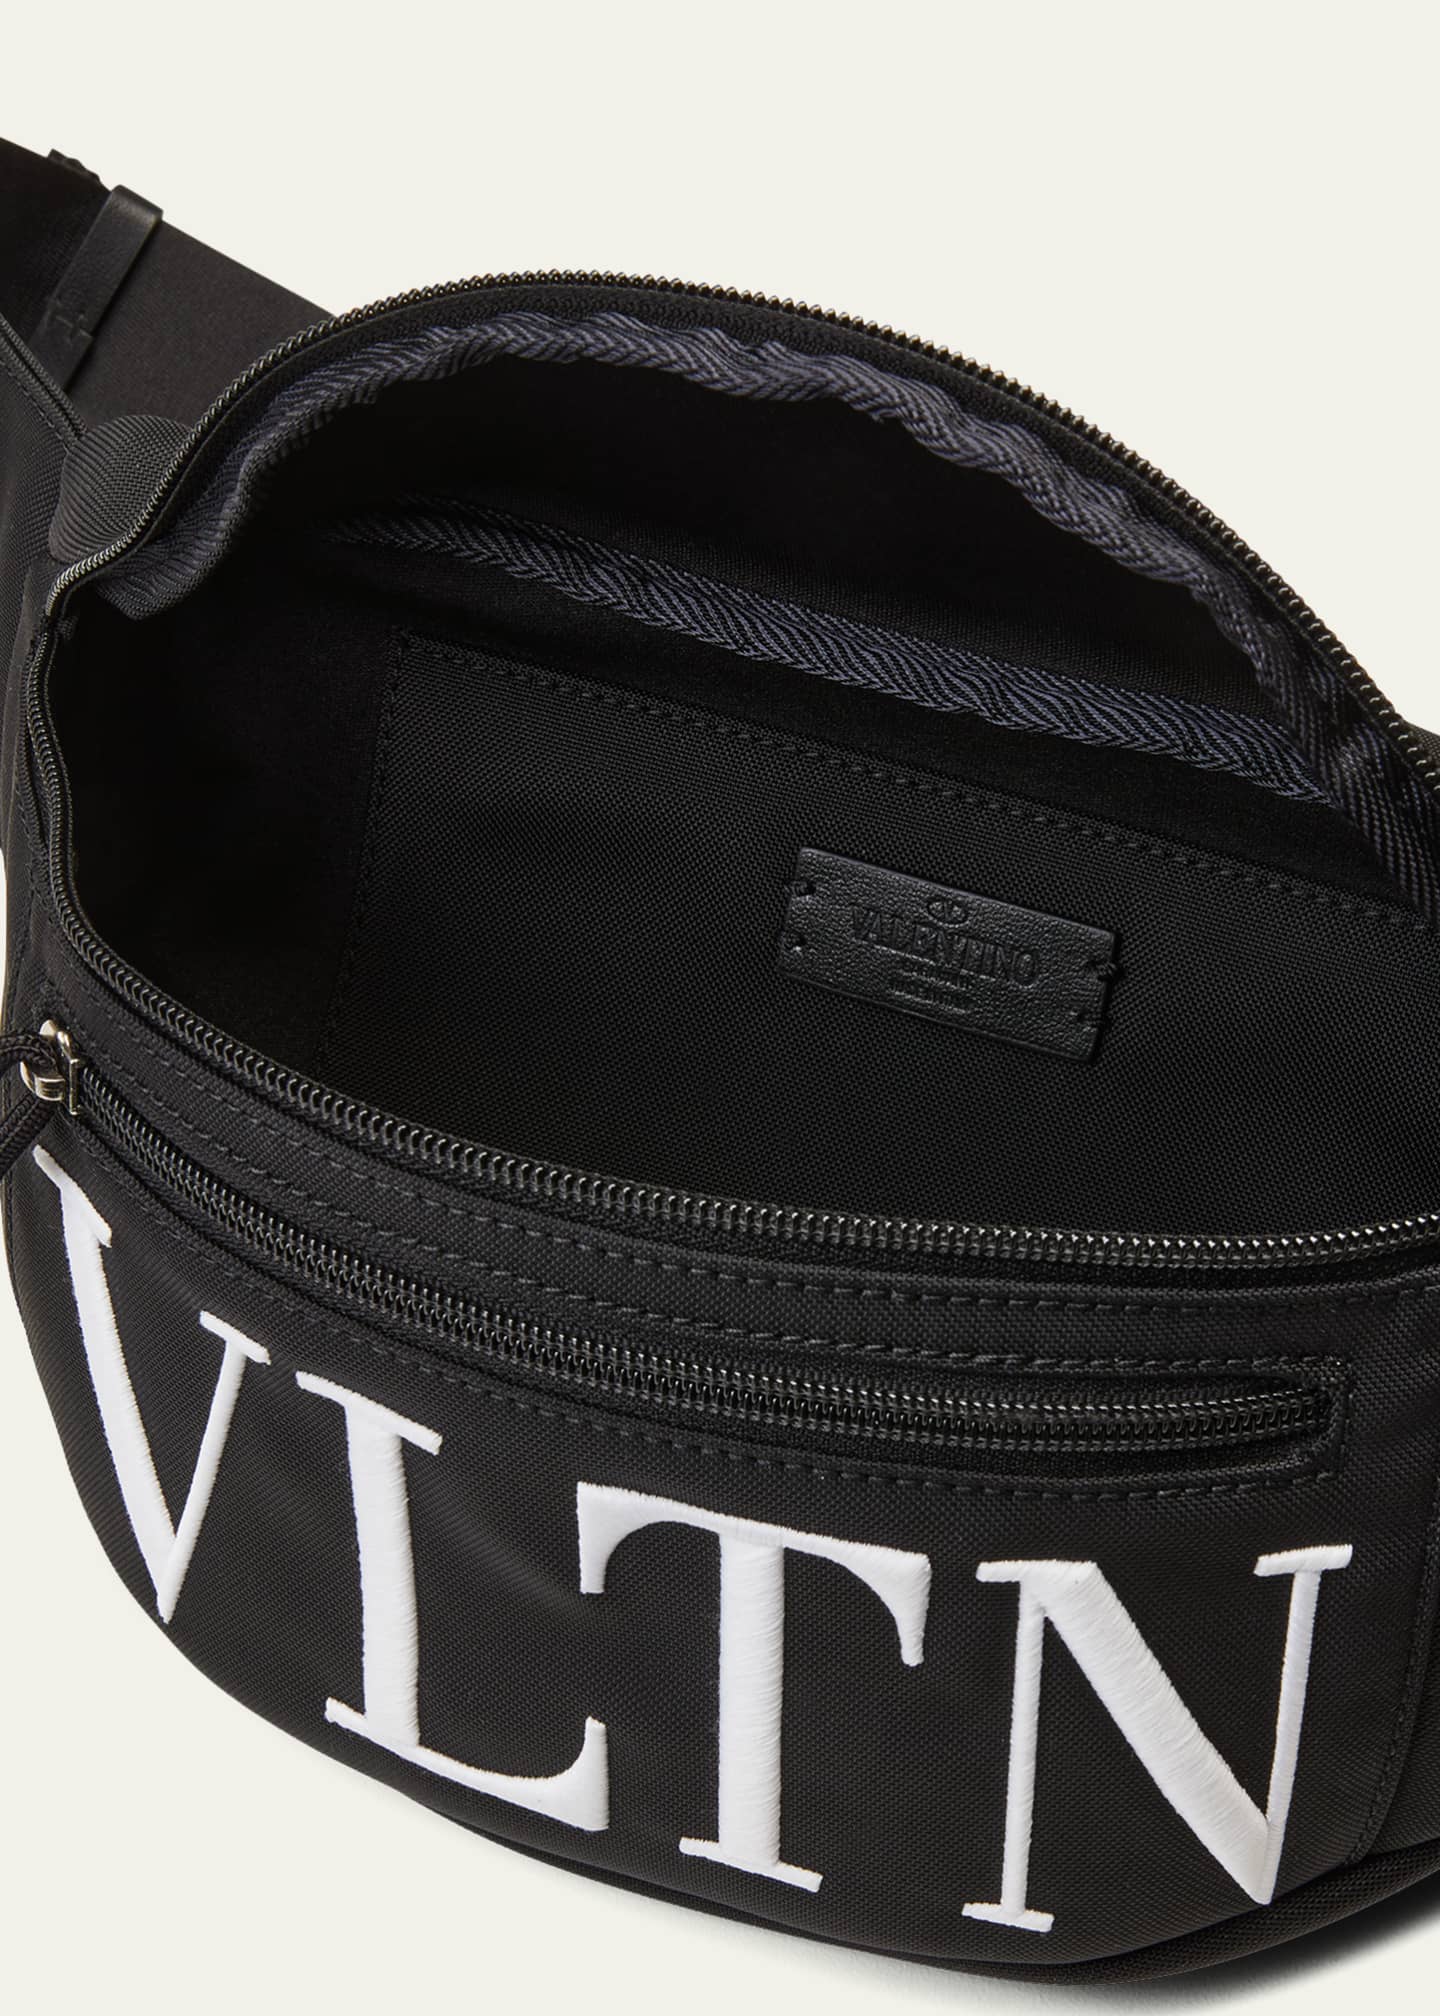 Valentino Garavani Men's VLTN Nylon Bag - Bergdorf Goodman